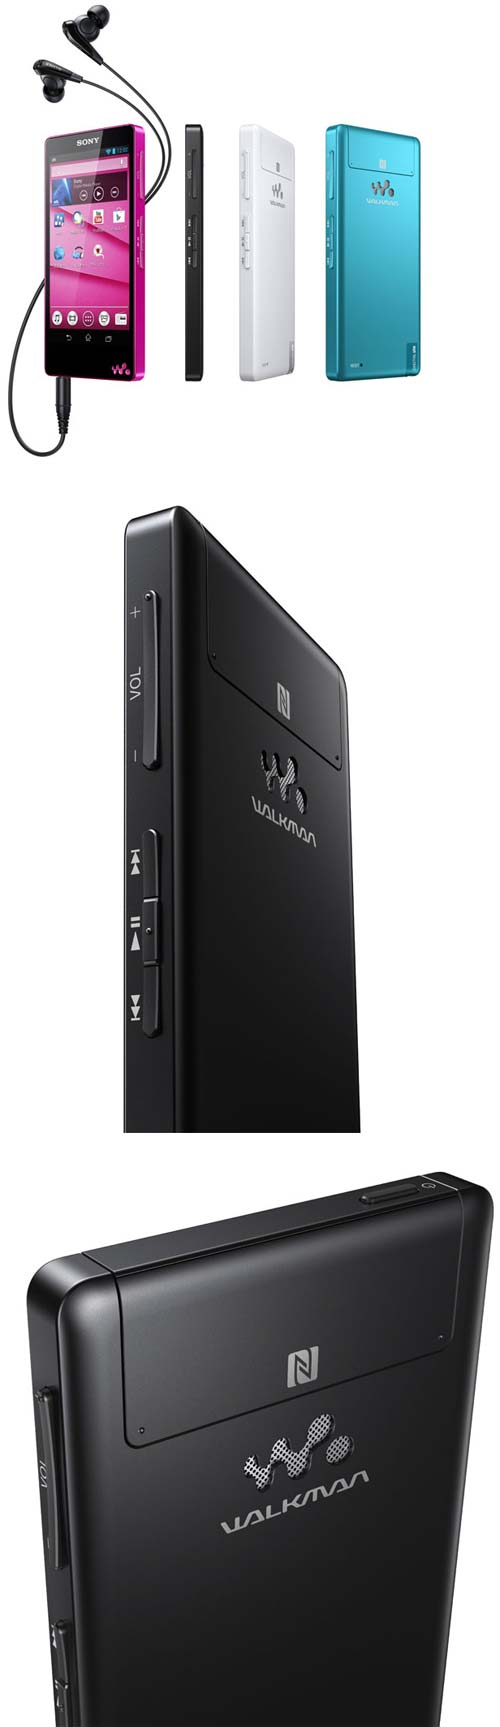 Sony представляет аудиоплеер Walkman F880